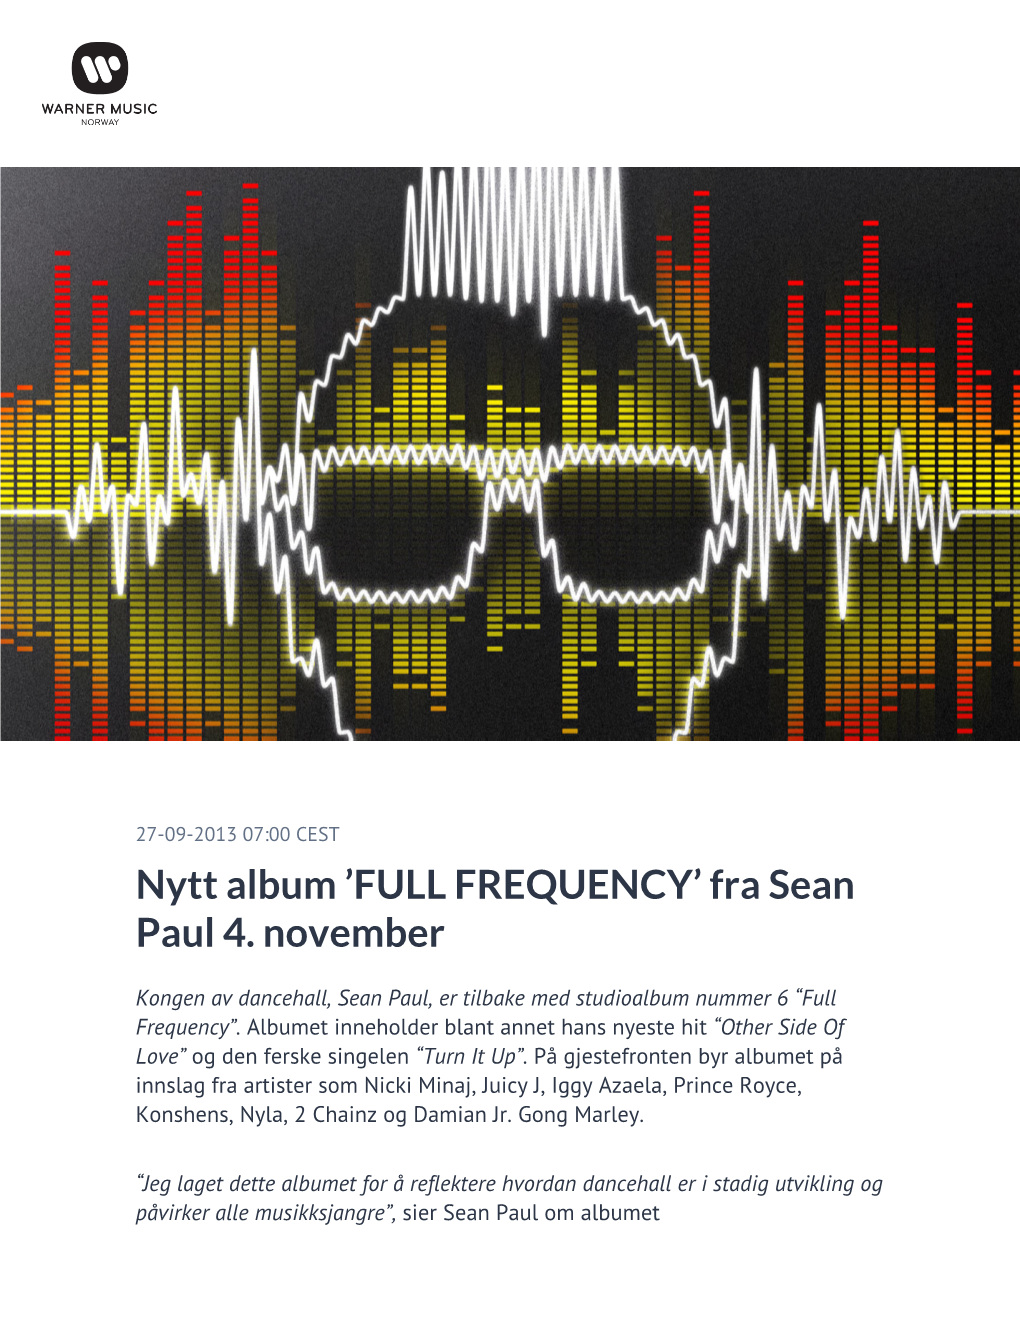 Nytt Album 'FULL FREQUENCY' Fra Sean Paul 4. November